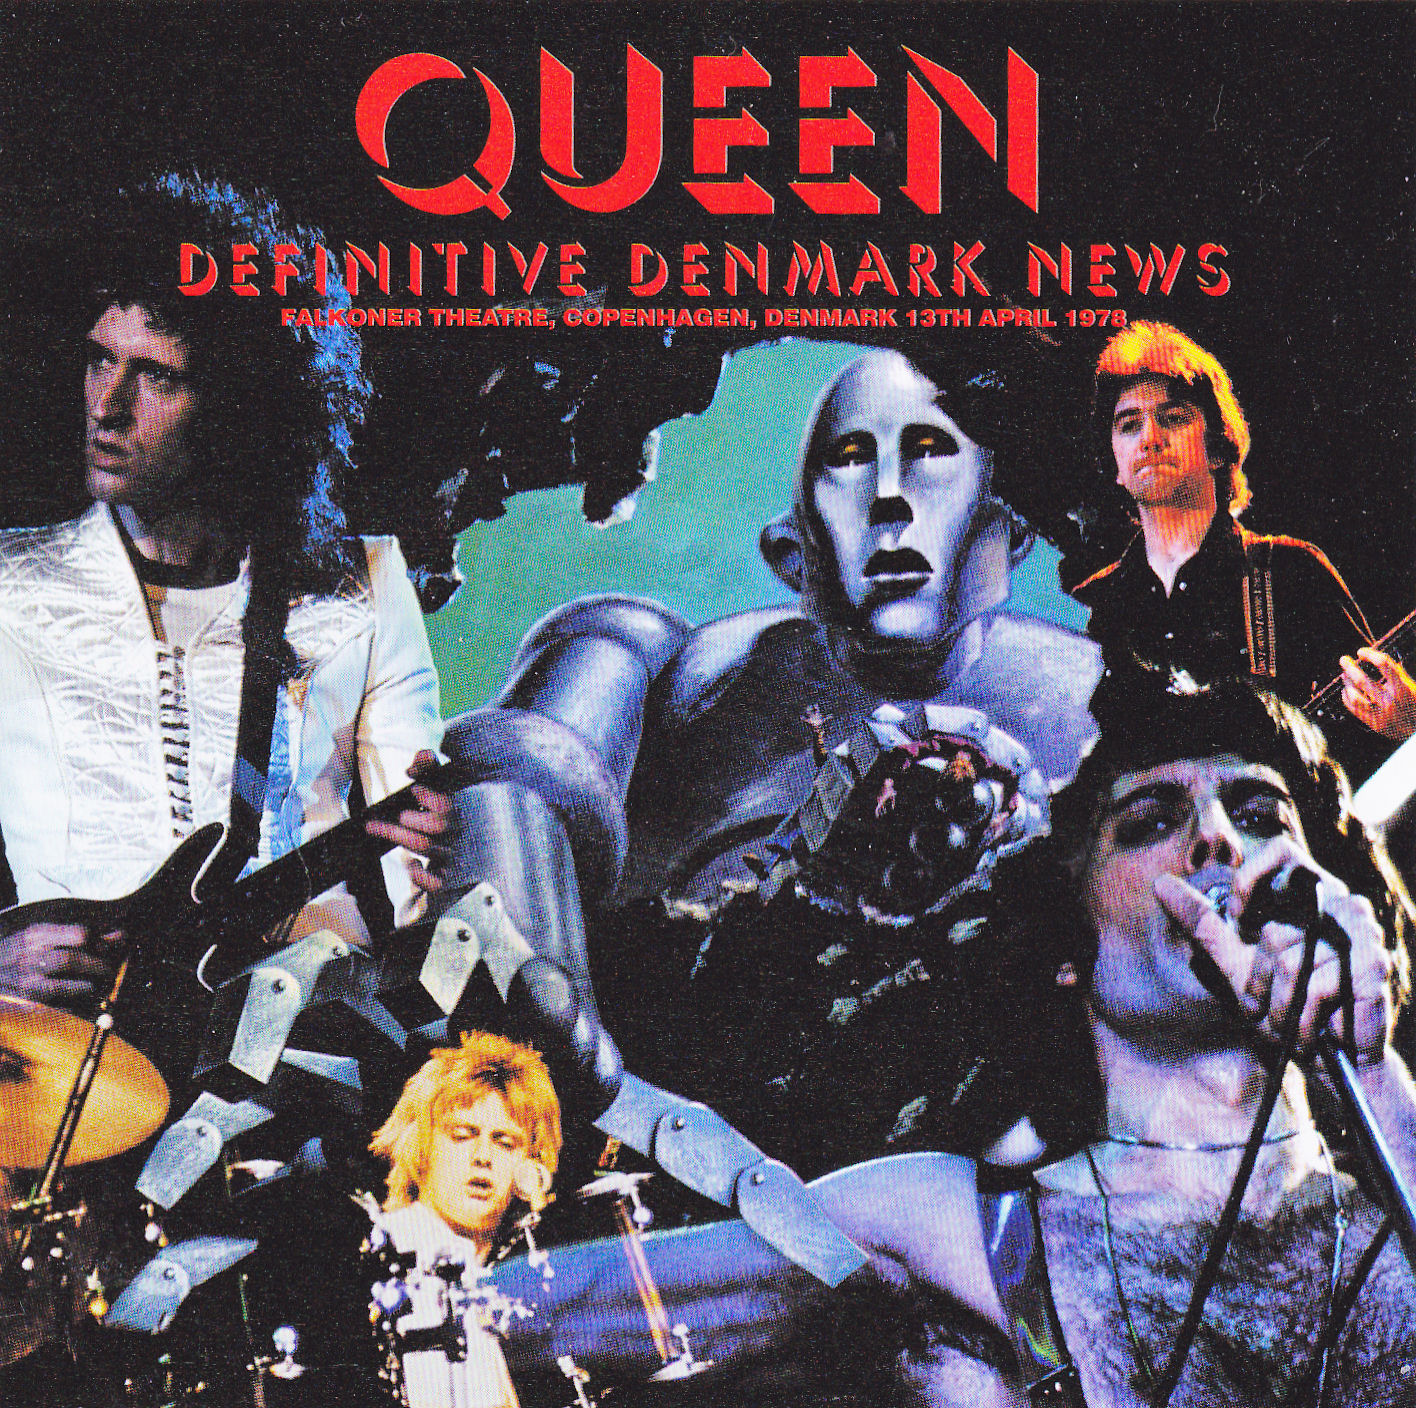 Queen1978-04-13FalkonerTheatreCopenhagenDenmark (2).jpg